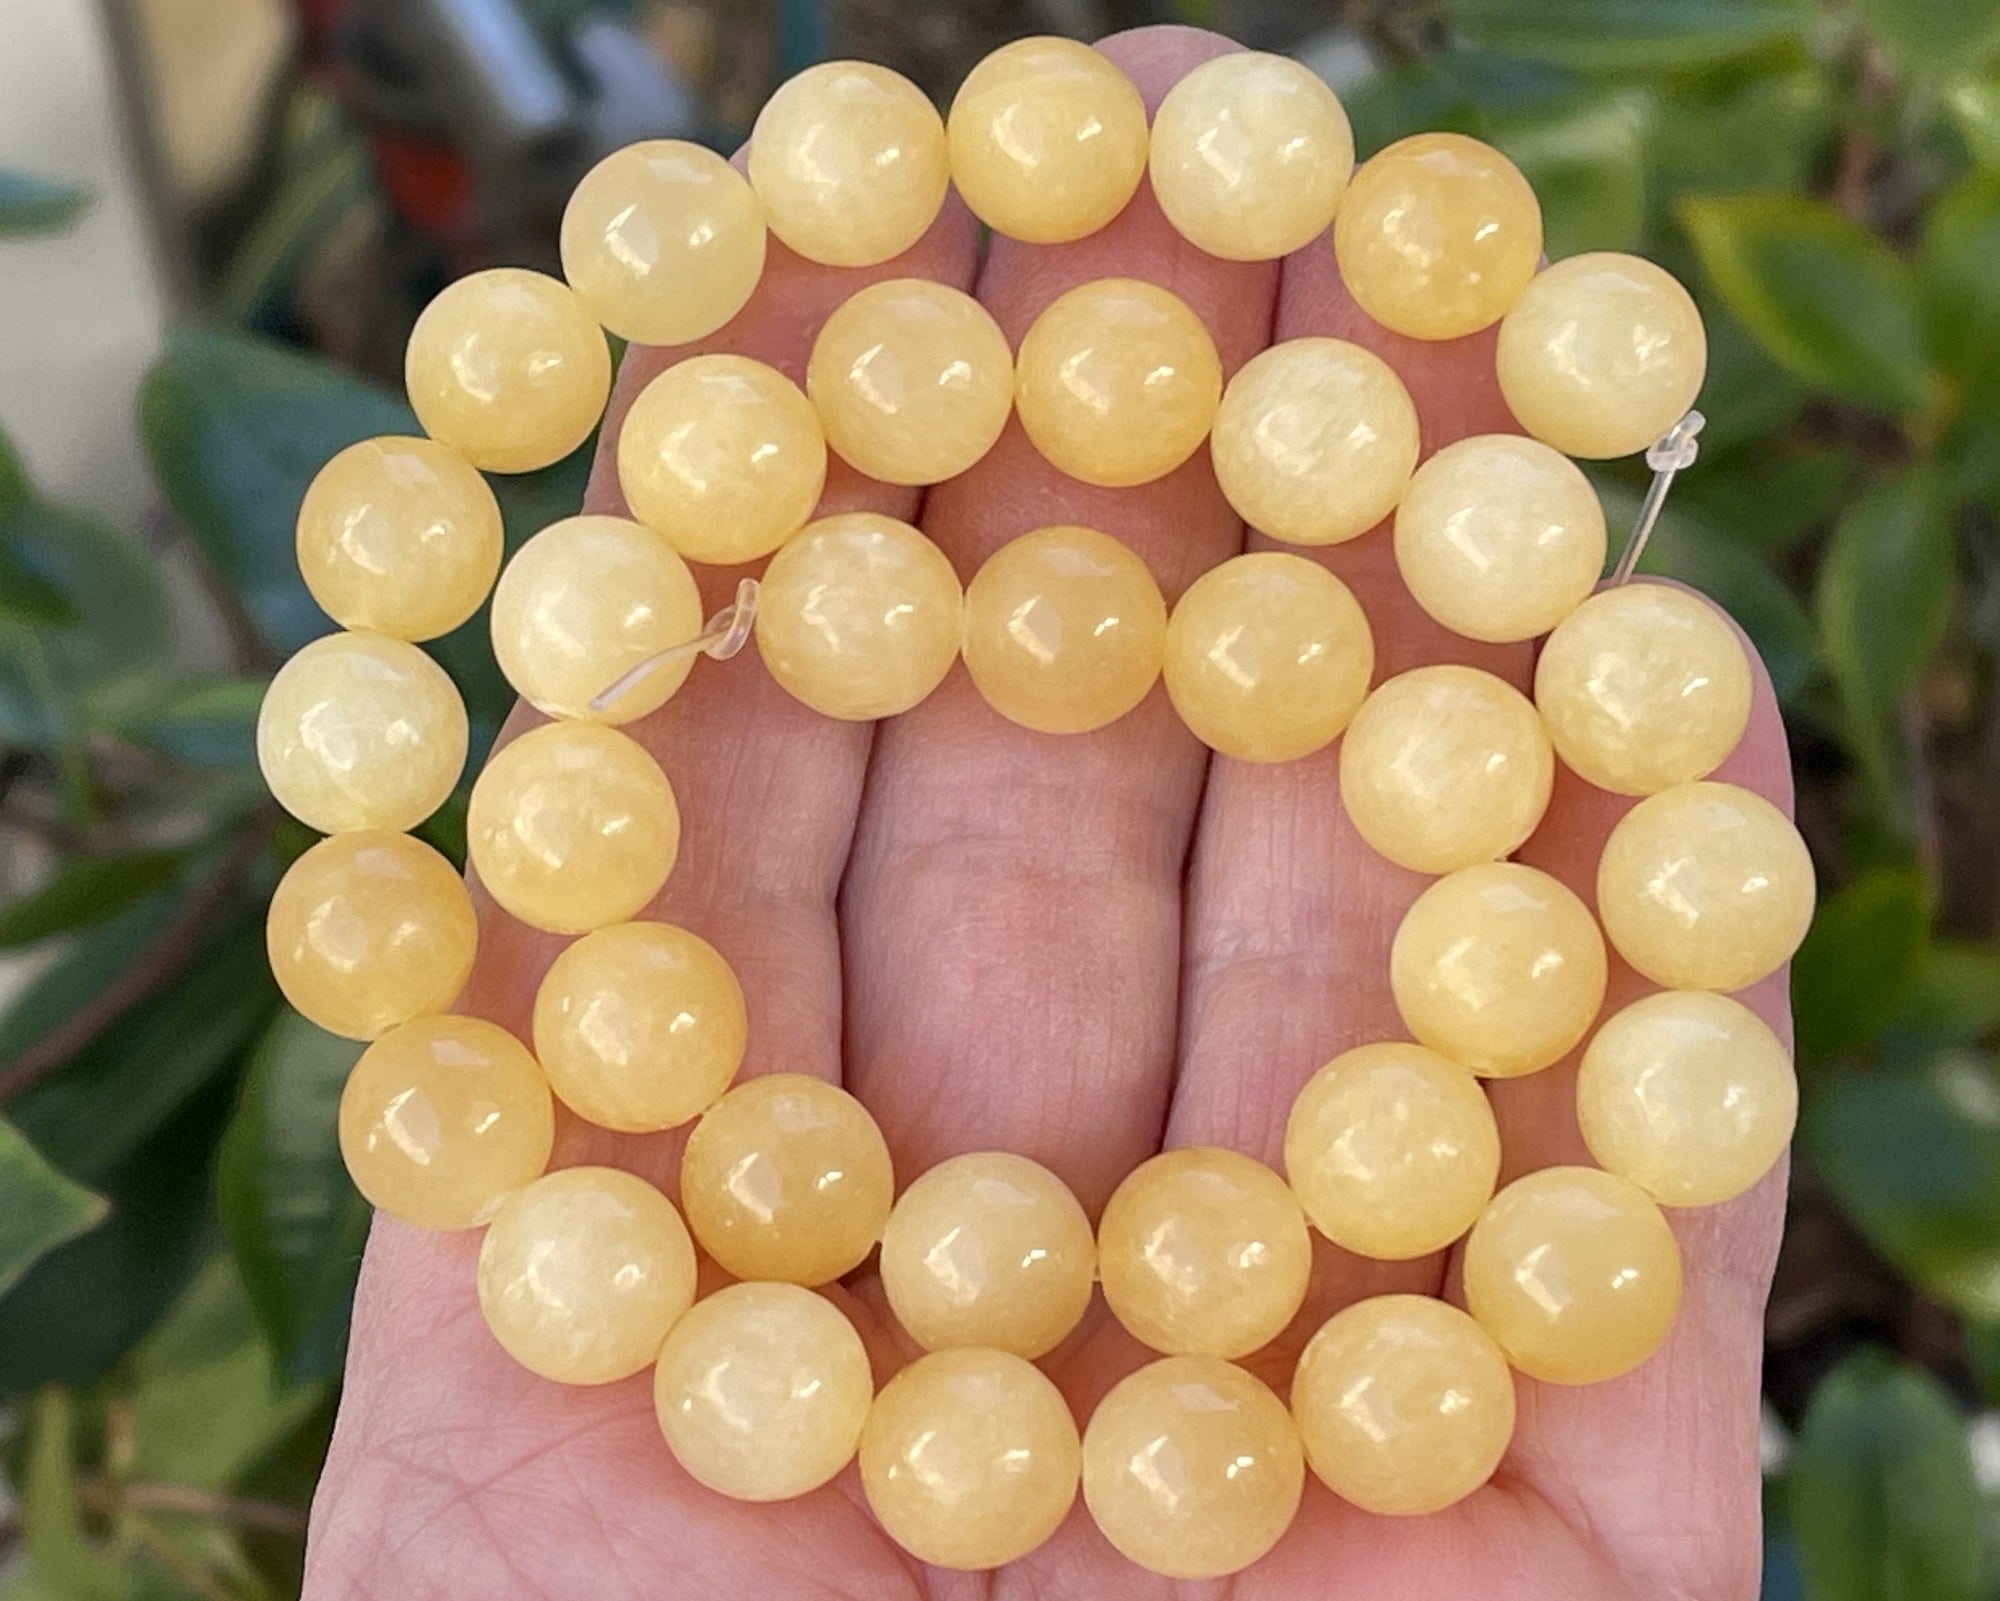 Yellow Jade 10mm round natural gemstone beads 15" strand